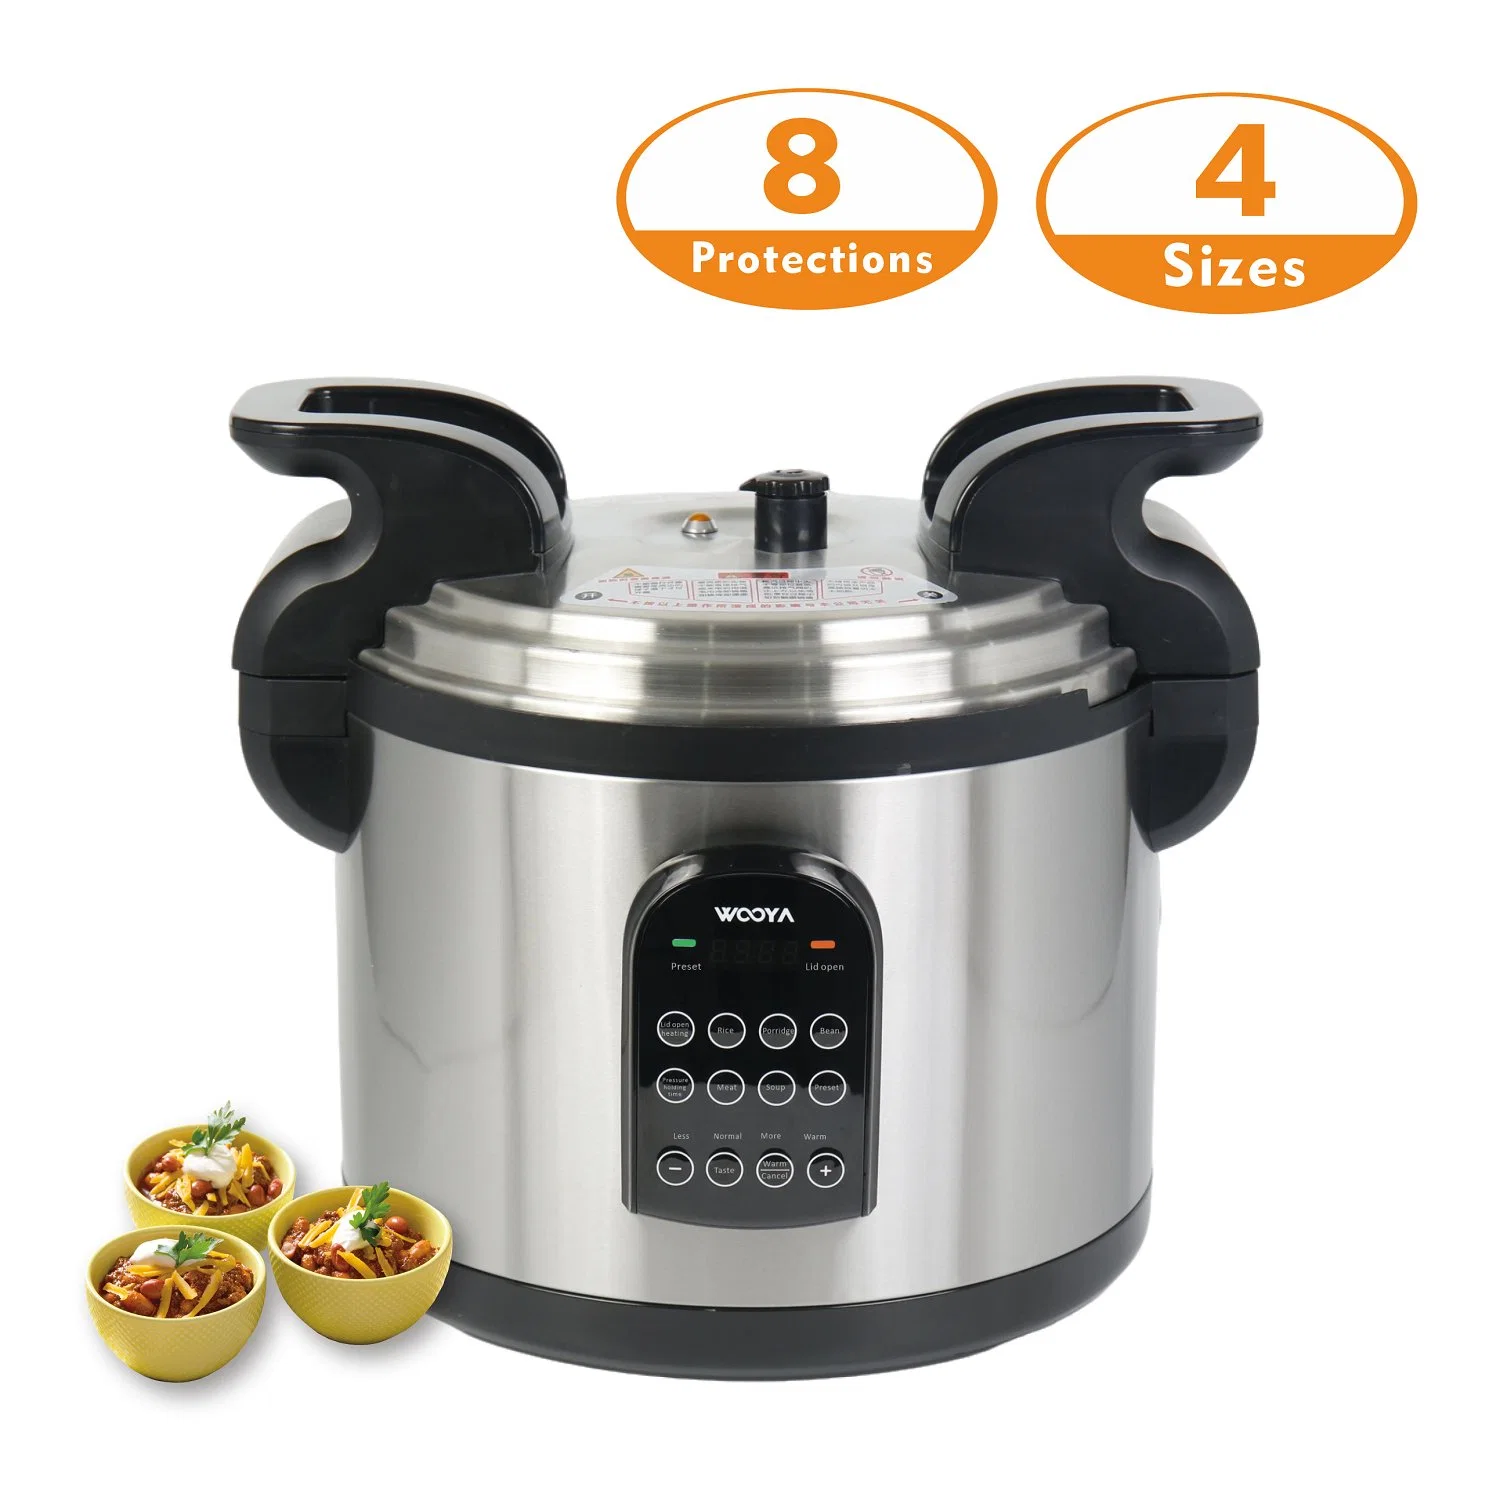 جهاز طهو ضغط Horeca مع 8 وسائل حماية كهربائية للخدمة الشاقة استخدام المطبخ